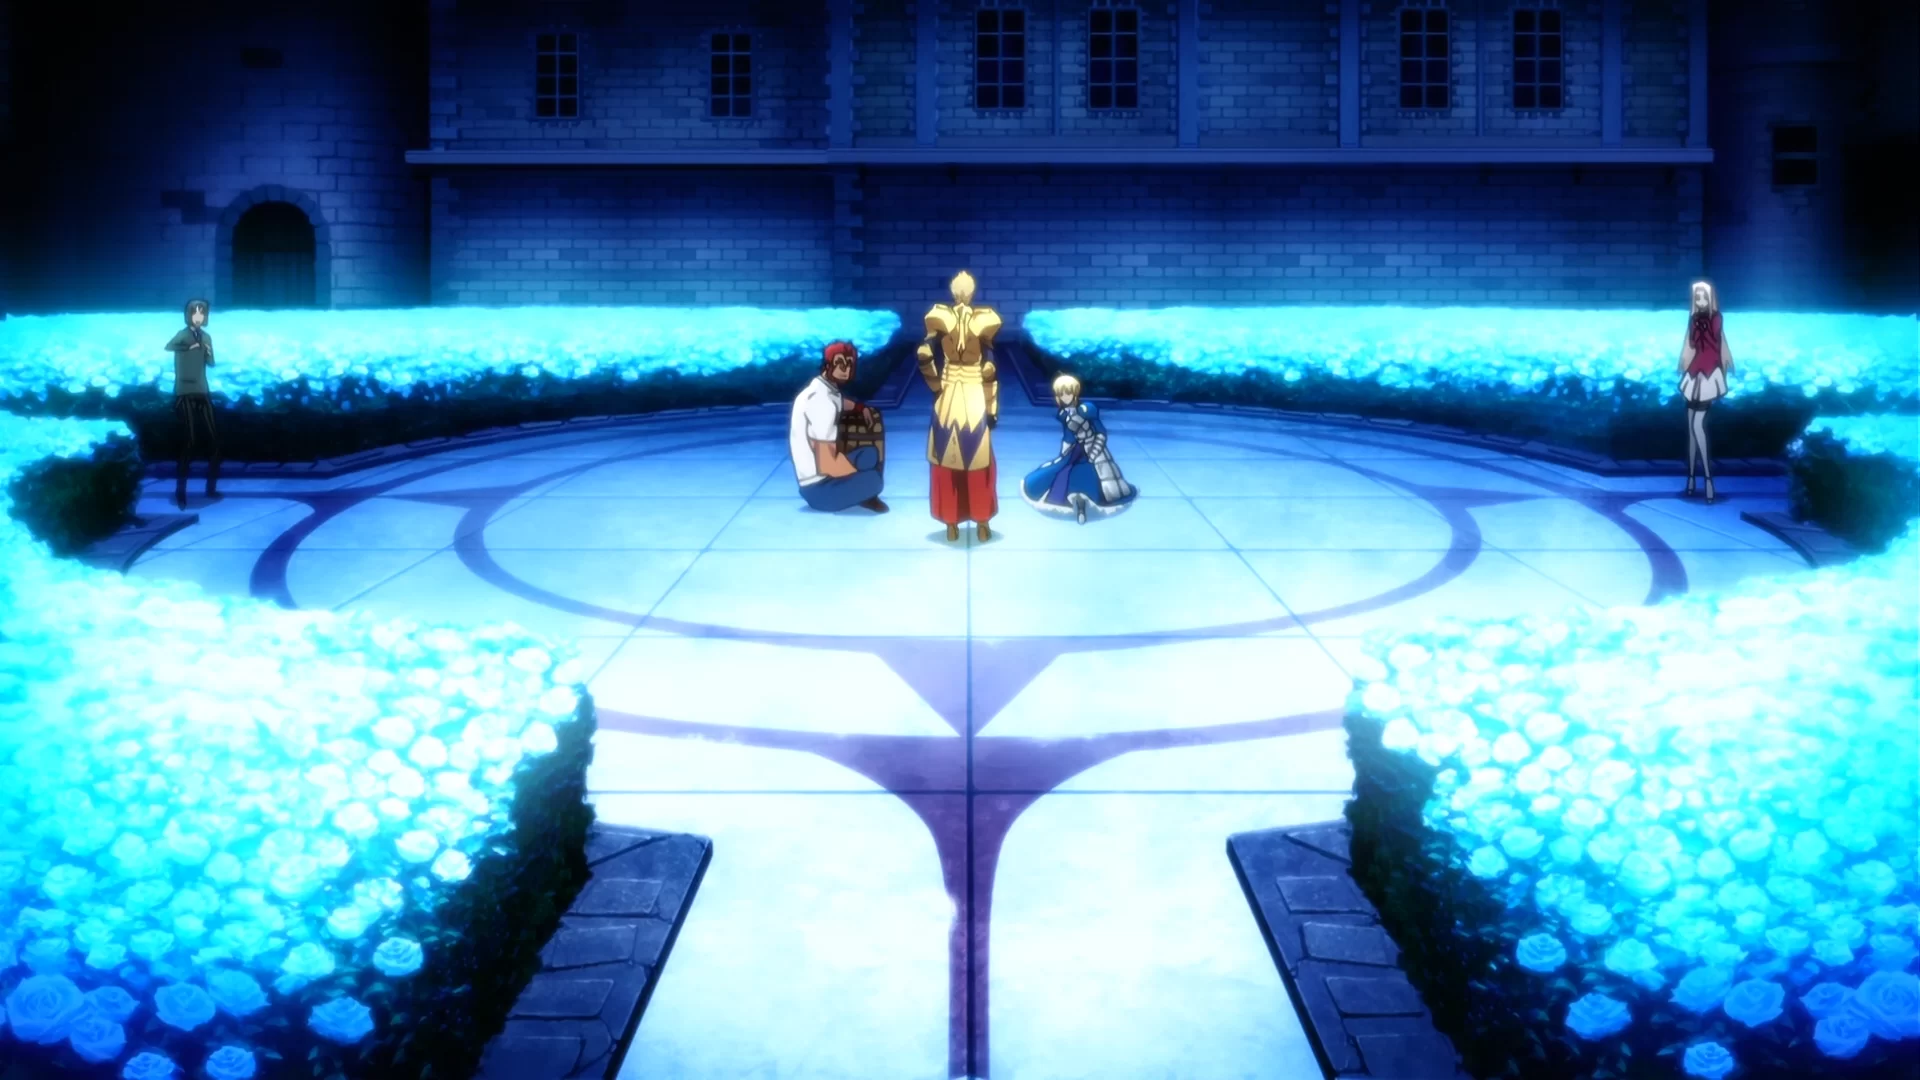 Minaturka 11 odcinka anime Fate/Zero